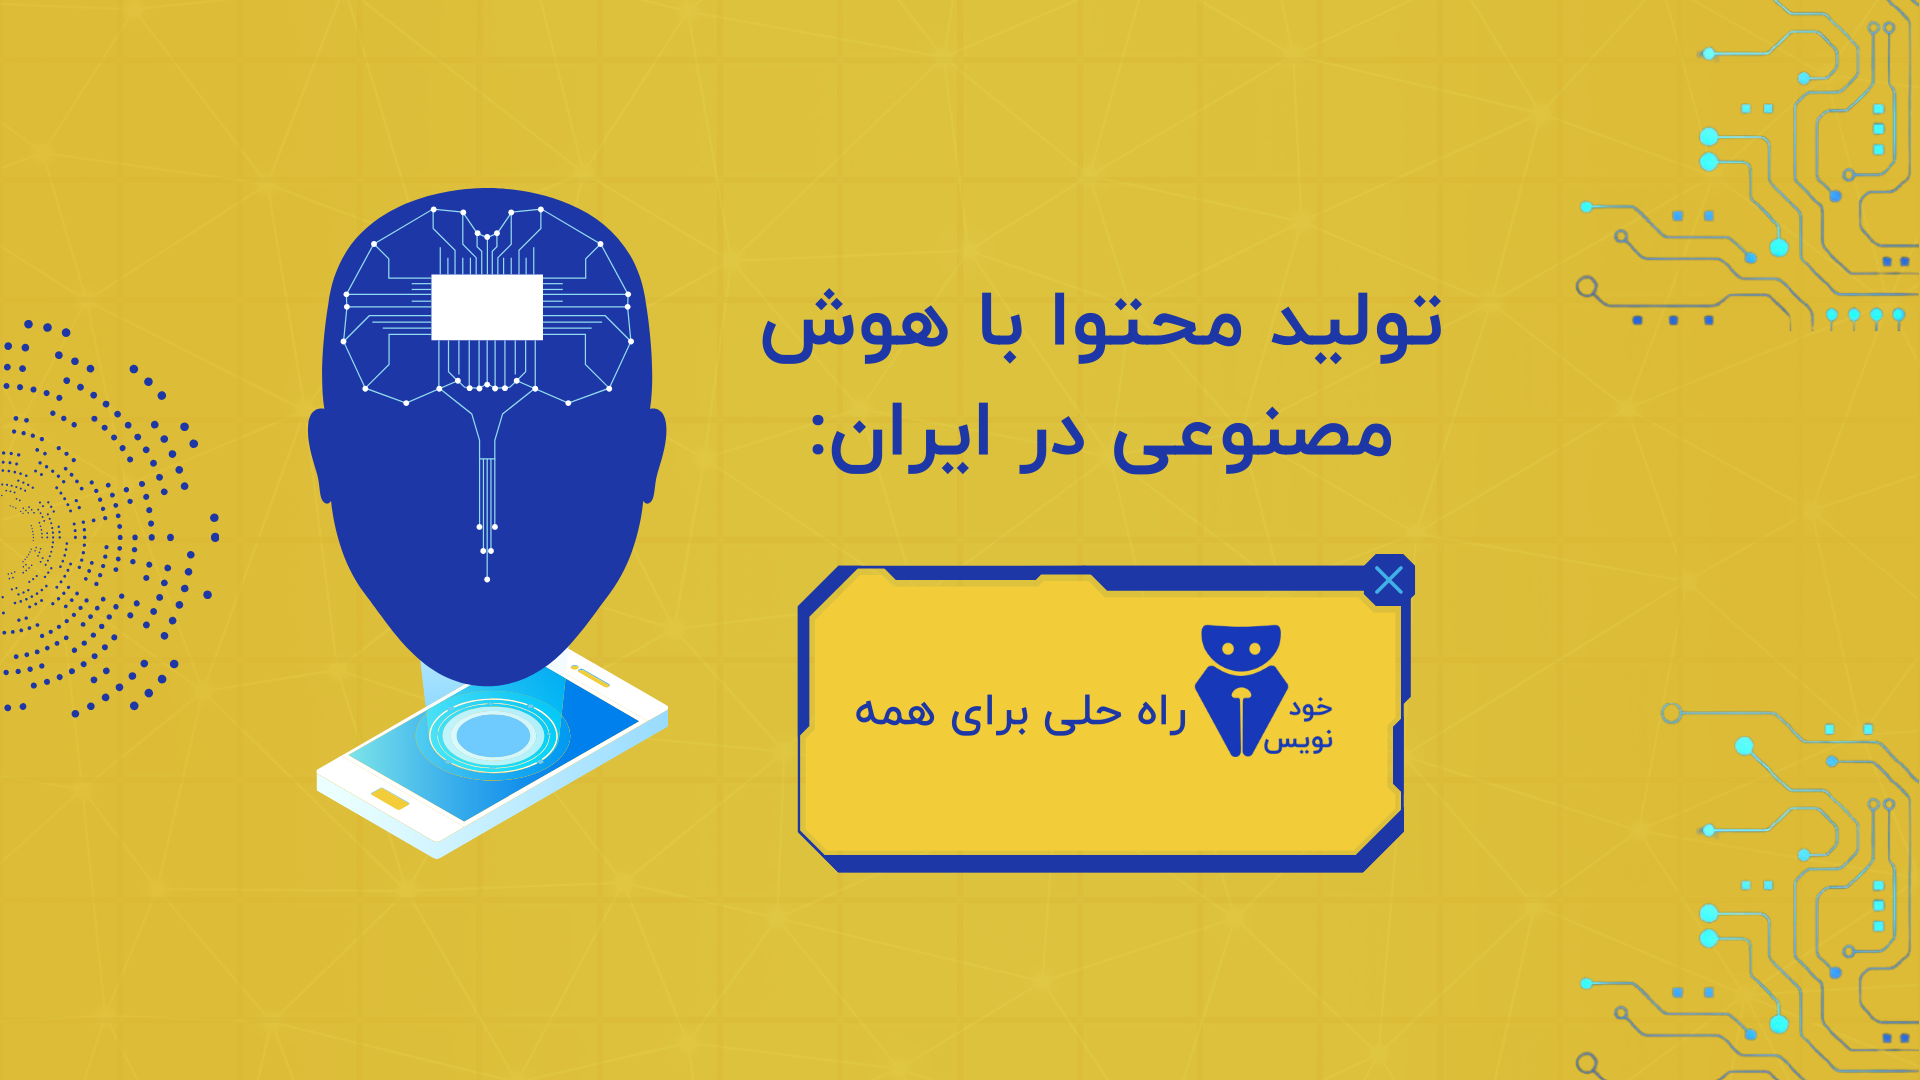 تولید محتوا سئو شده با هوش مصنوعی در ایران: خودنویس